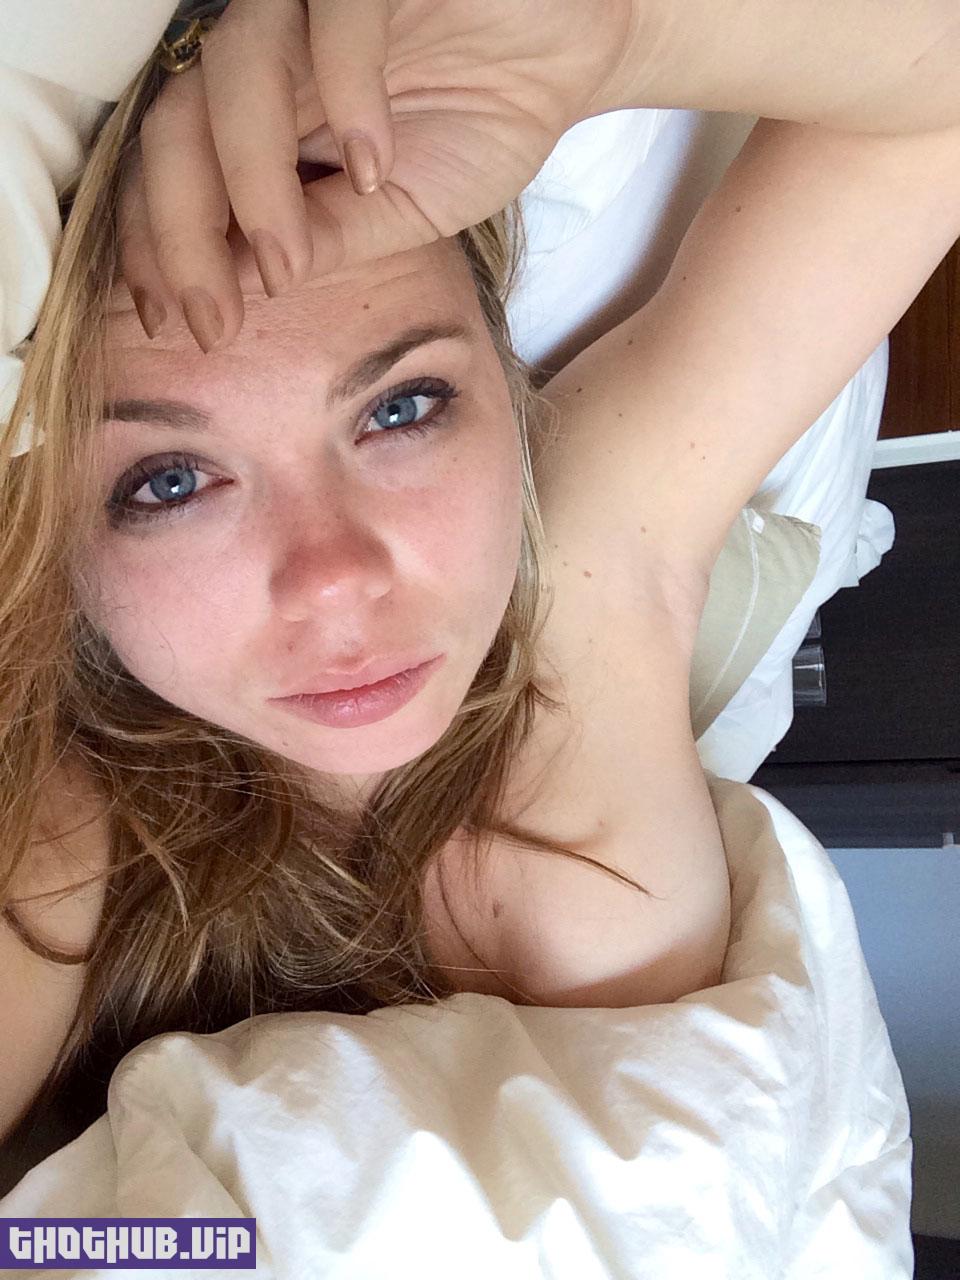 Amanda ward celebrity in nude-excellent porn